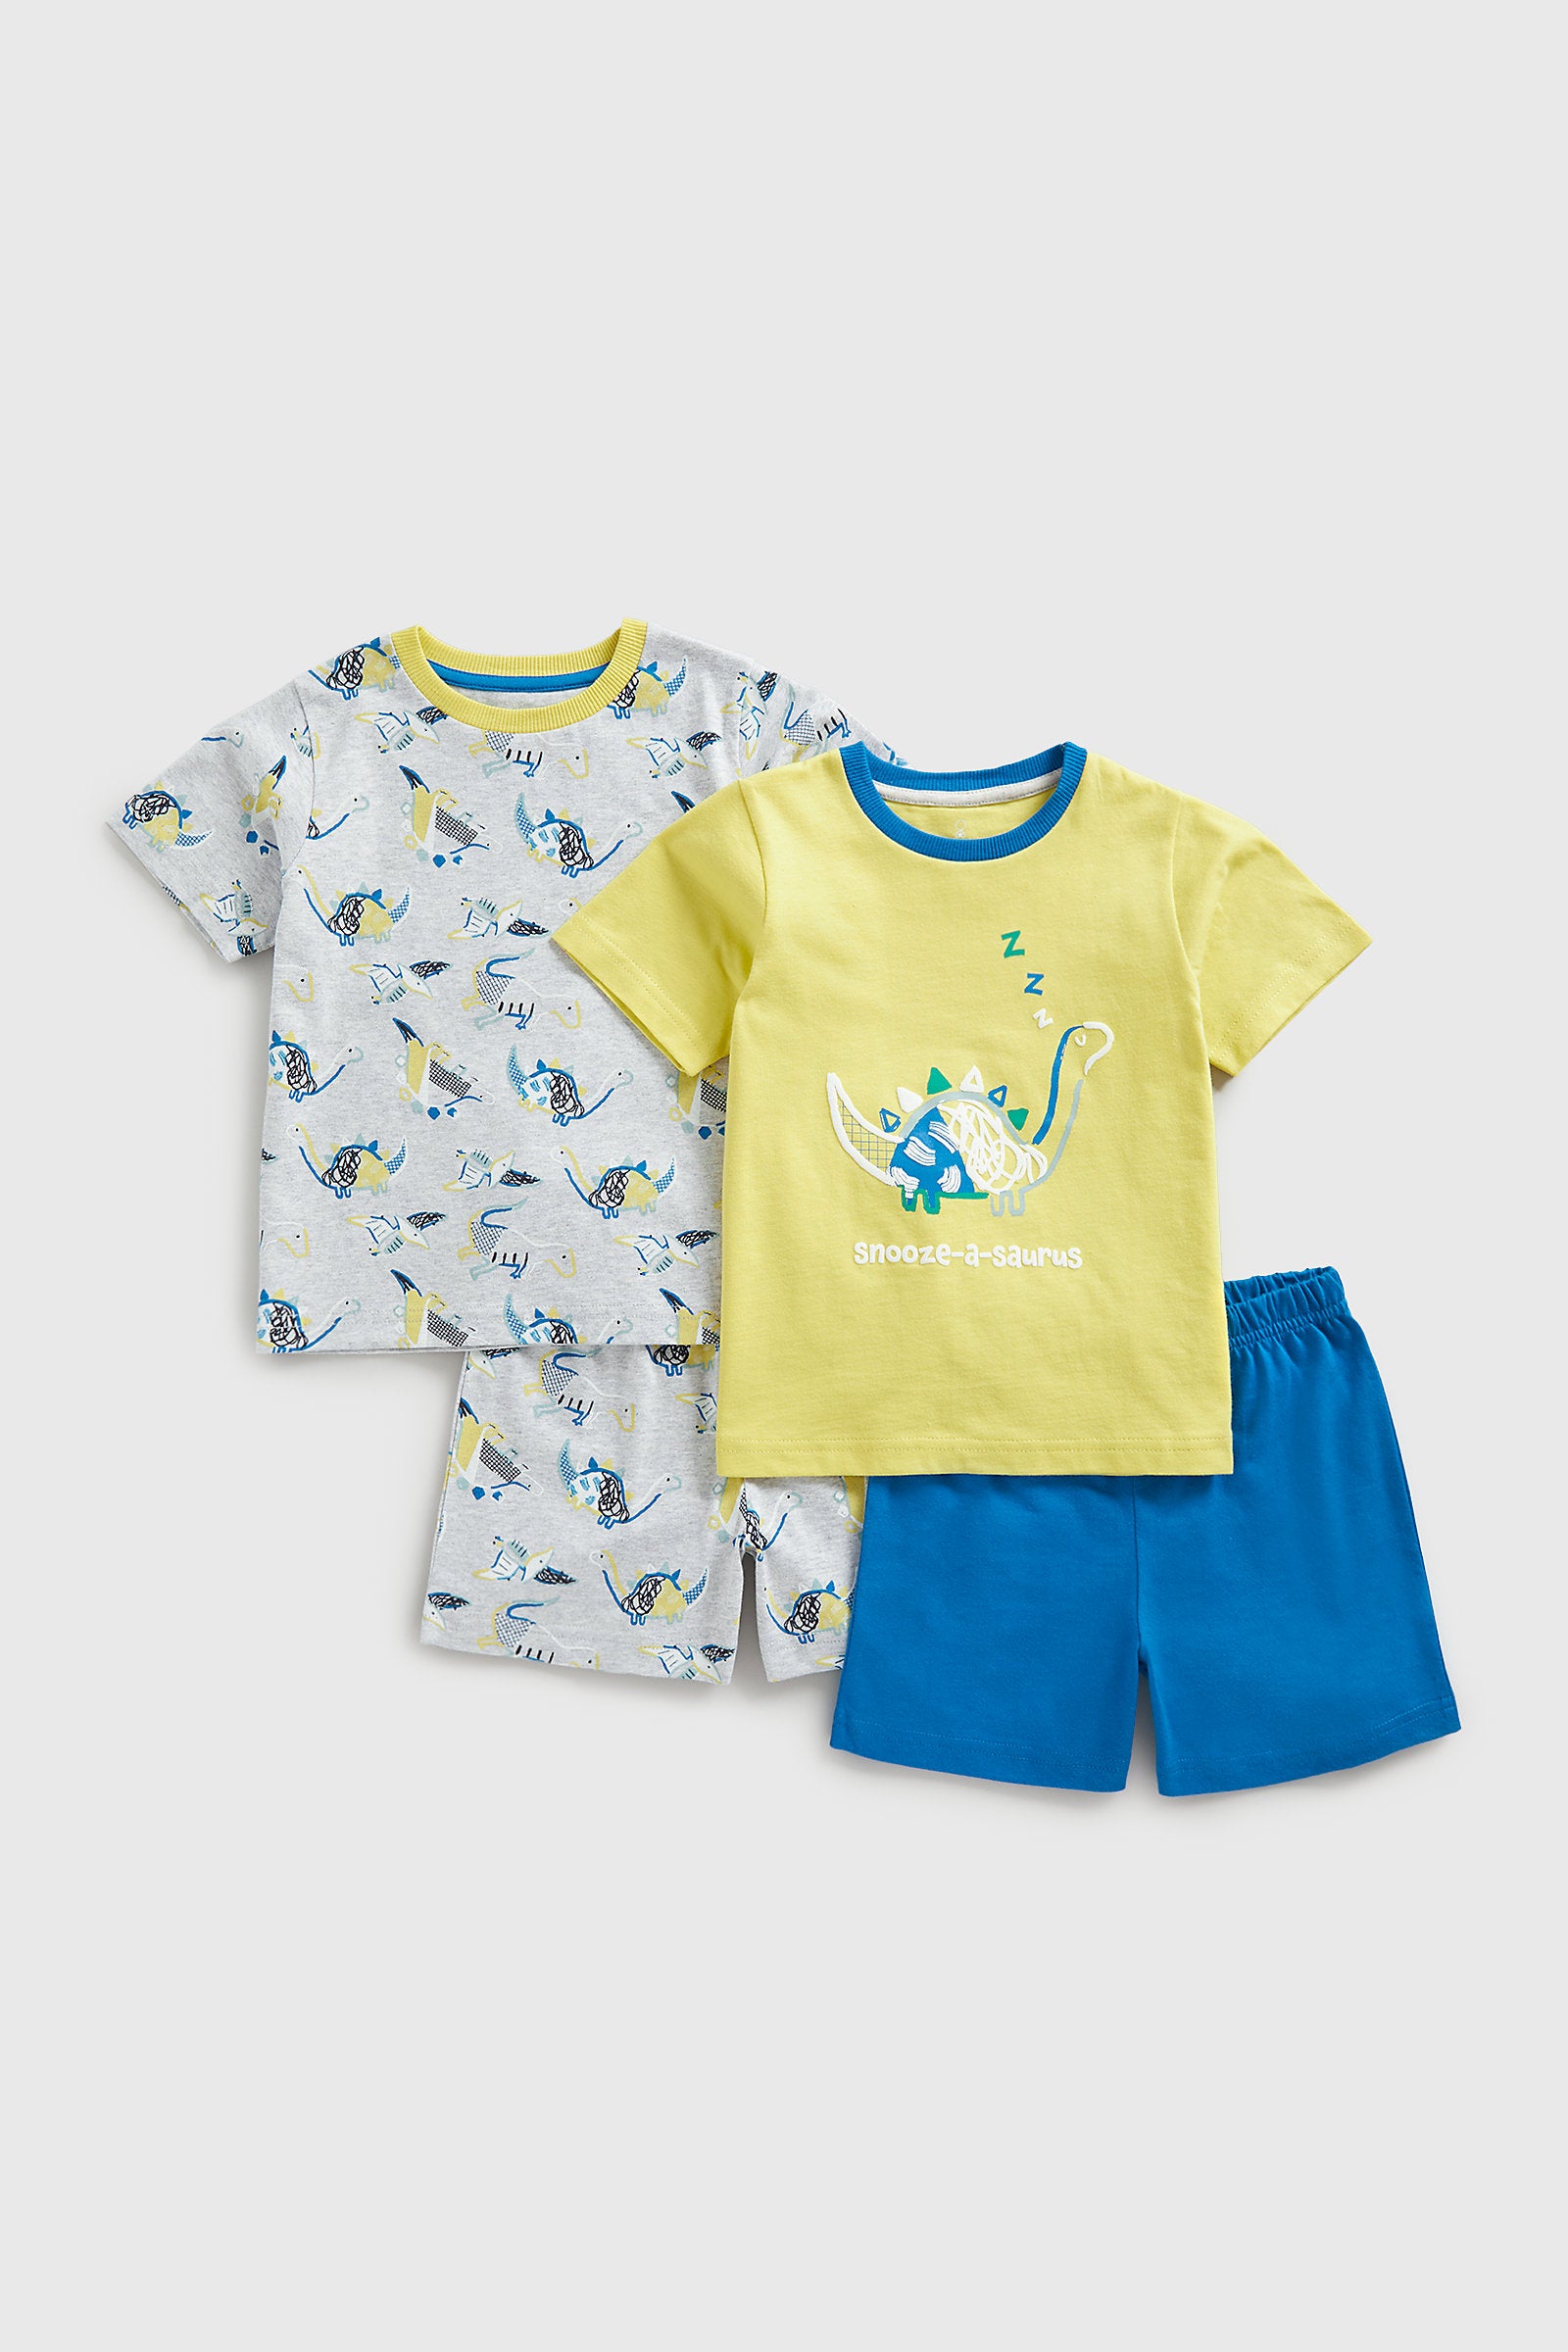 Mothercare Dinosaur Shortie Pyjamas - 2 Pack